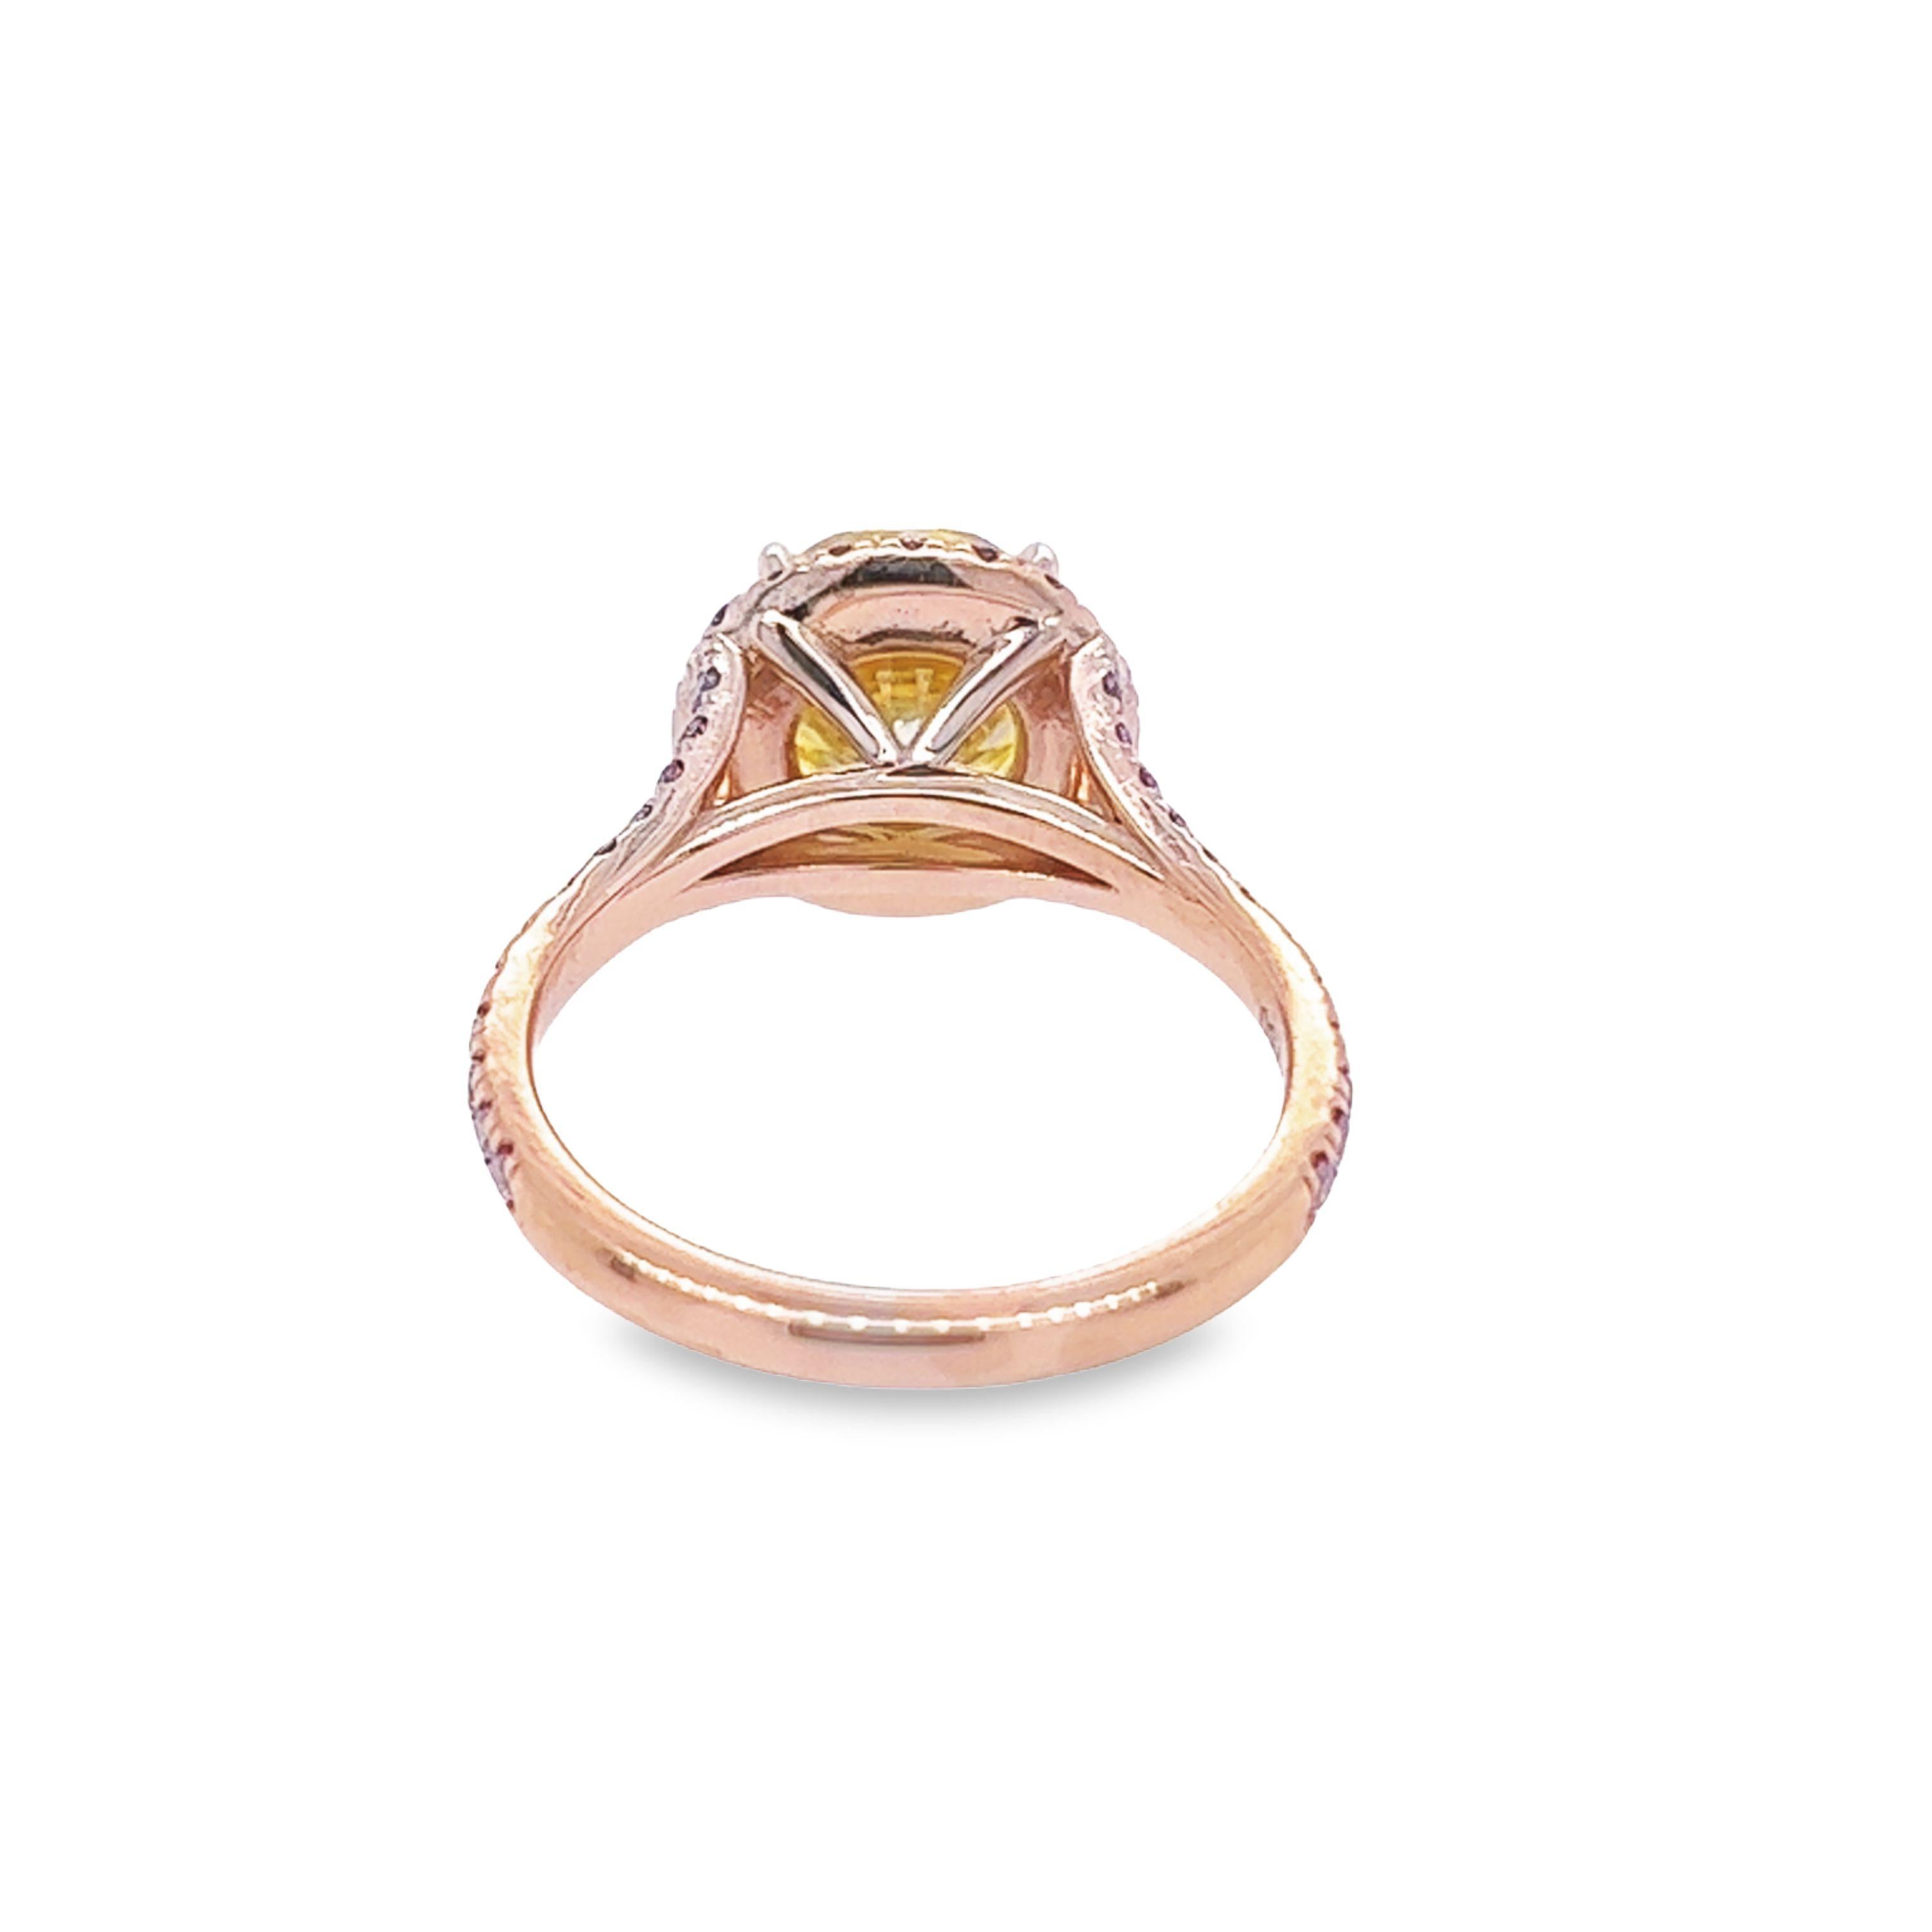 David Rosenberg 2.61 Carat Round Fancy Vivid Yellow GIA Diamond Engagement Ring For Sale 1